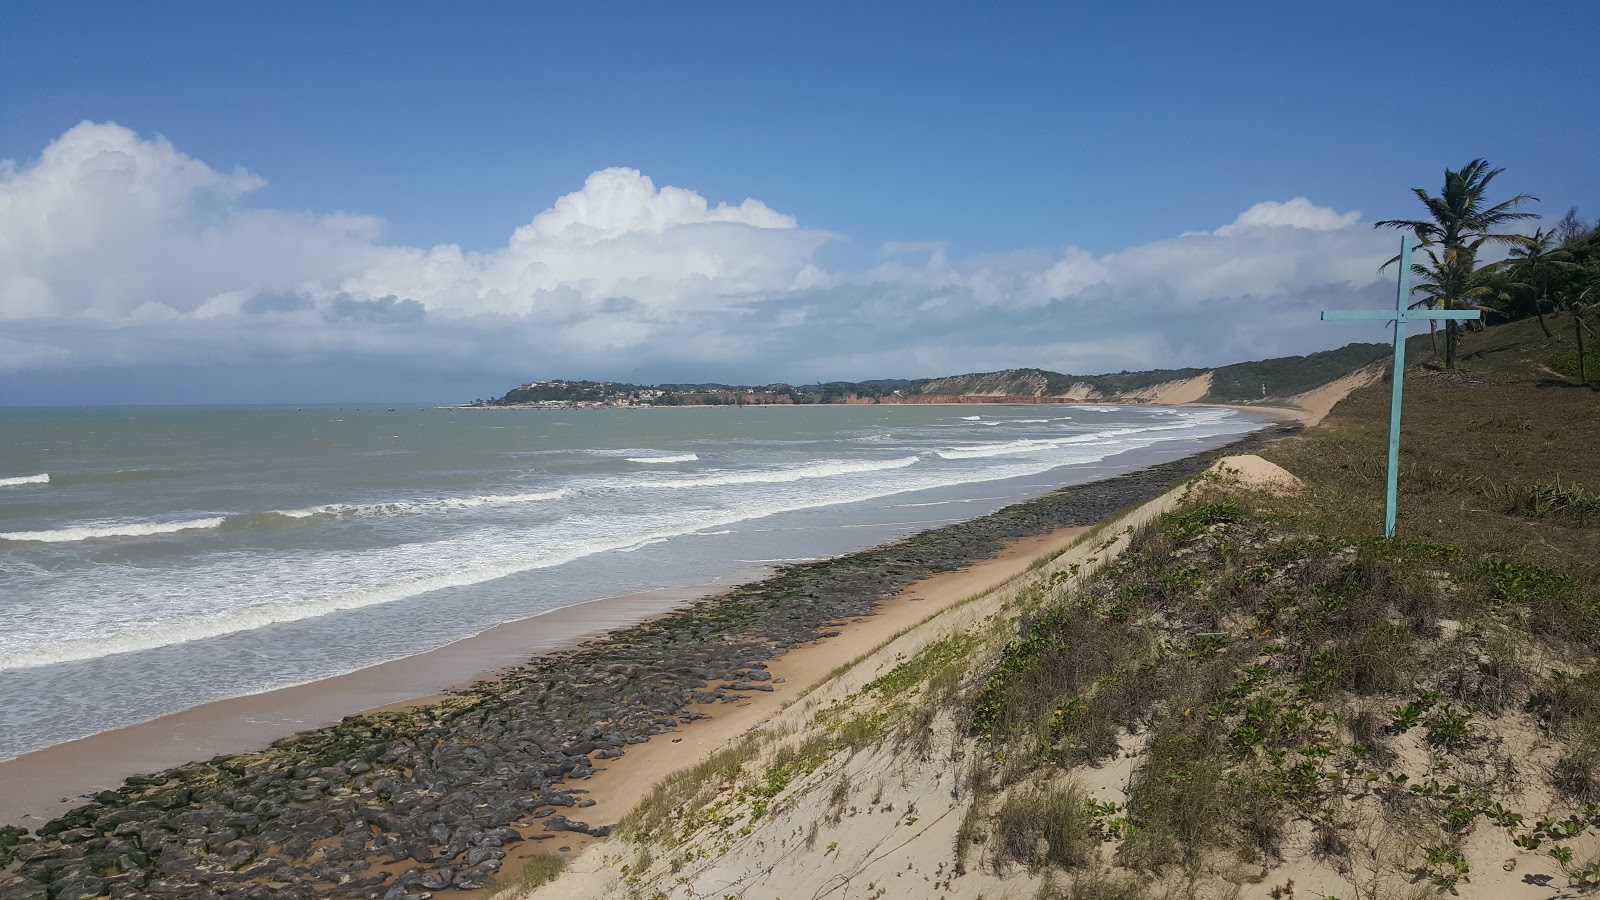 Baia Formosa: Enjoy the Beach in Rio Grande do Norte, Brazil